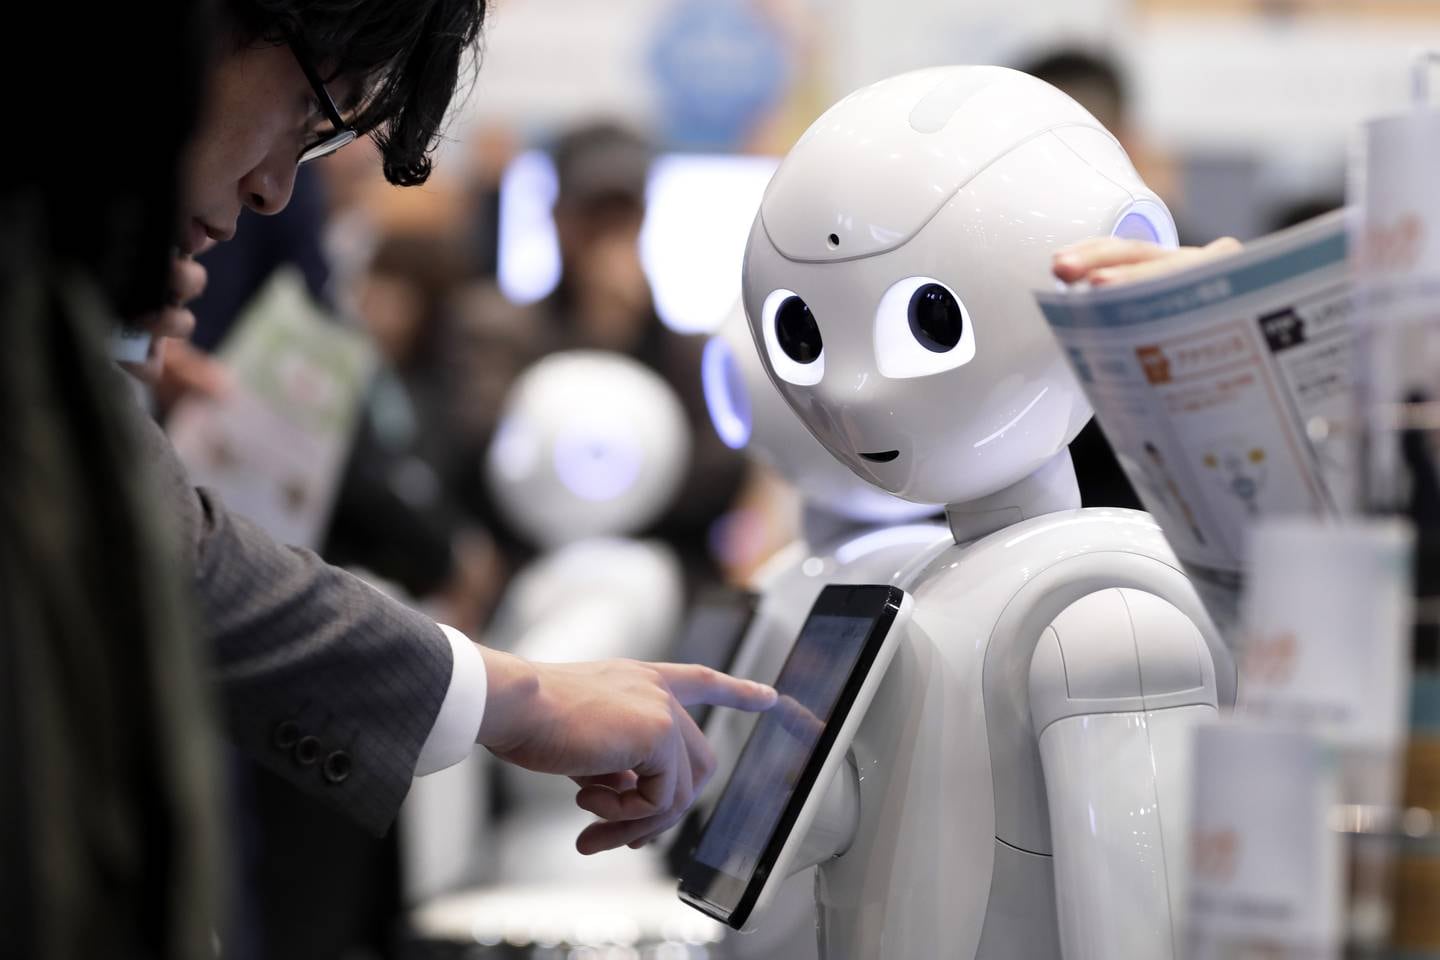 الثلاثاء ، نوفمبر.  في 21 ، 2017 ، حاولت شركة SoftBank Robot World 2017 في طوكيو باليابان تقديم طلب للحصول على روبوت بشري SoftBank Group Corporation Pepper.  الرقائق الدقيقة والأقمار الصناعية ، سيتم توصيل تريليون جهاز في المستقبل بالإنترنت وسيتم توصيل التكنولوجيا بالبشر.  المصور: كيوشي أوتا / بلومبرج